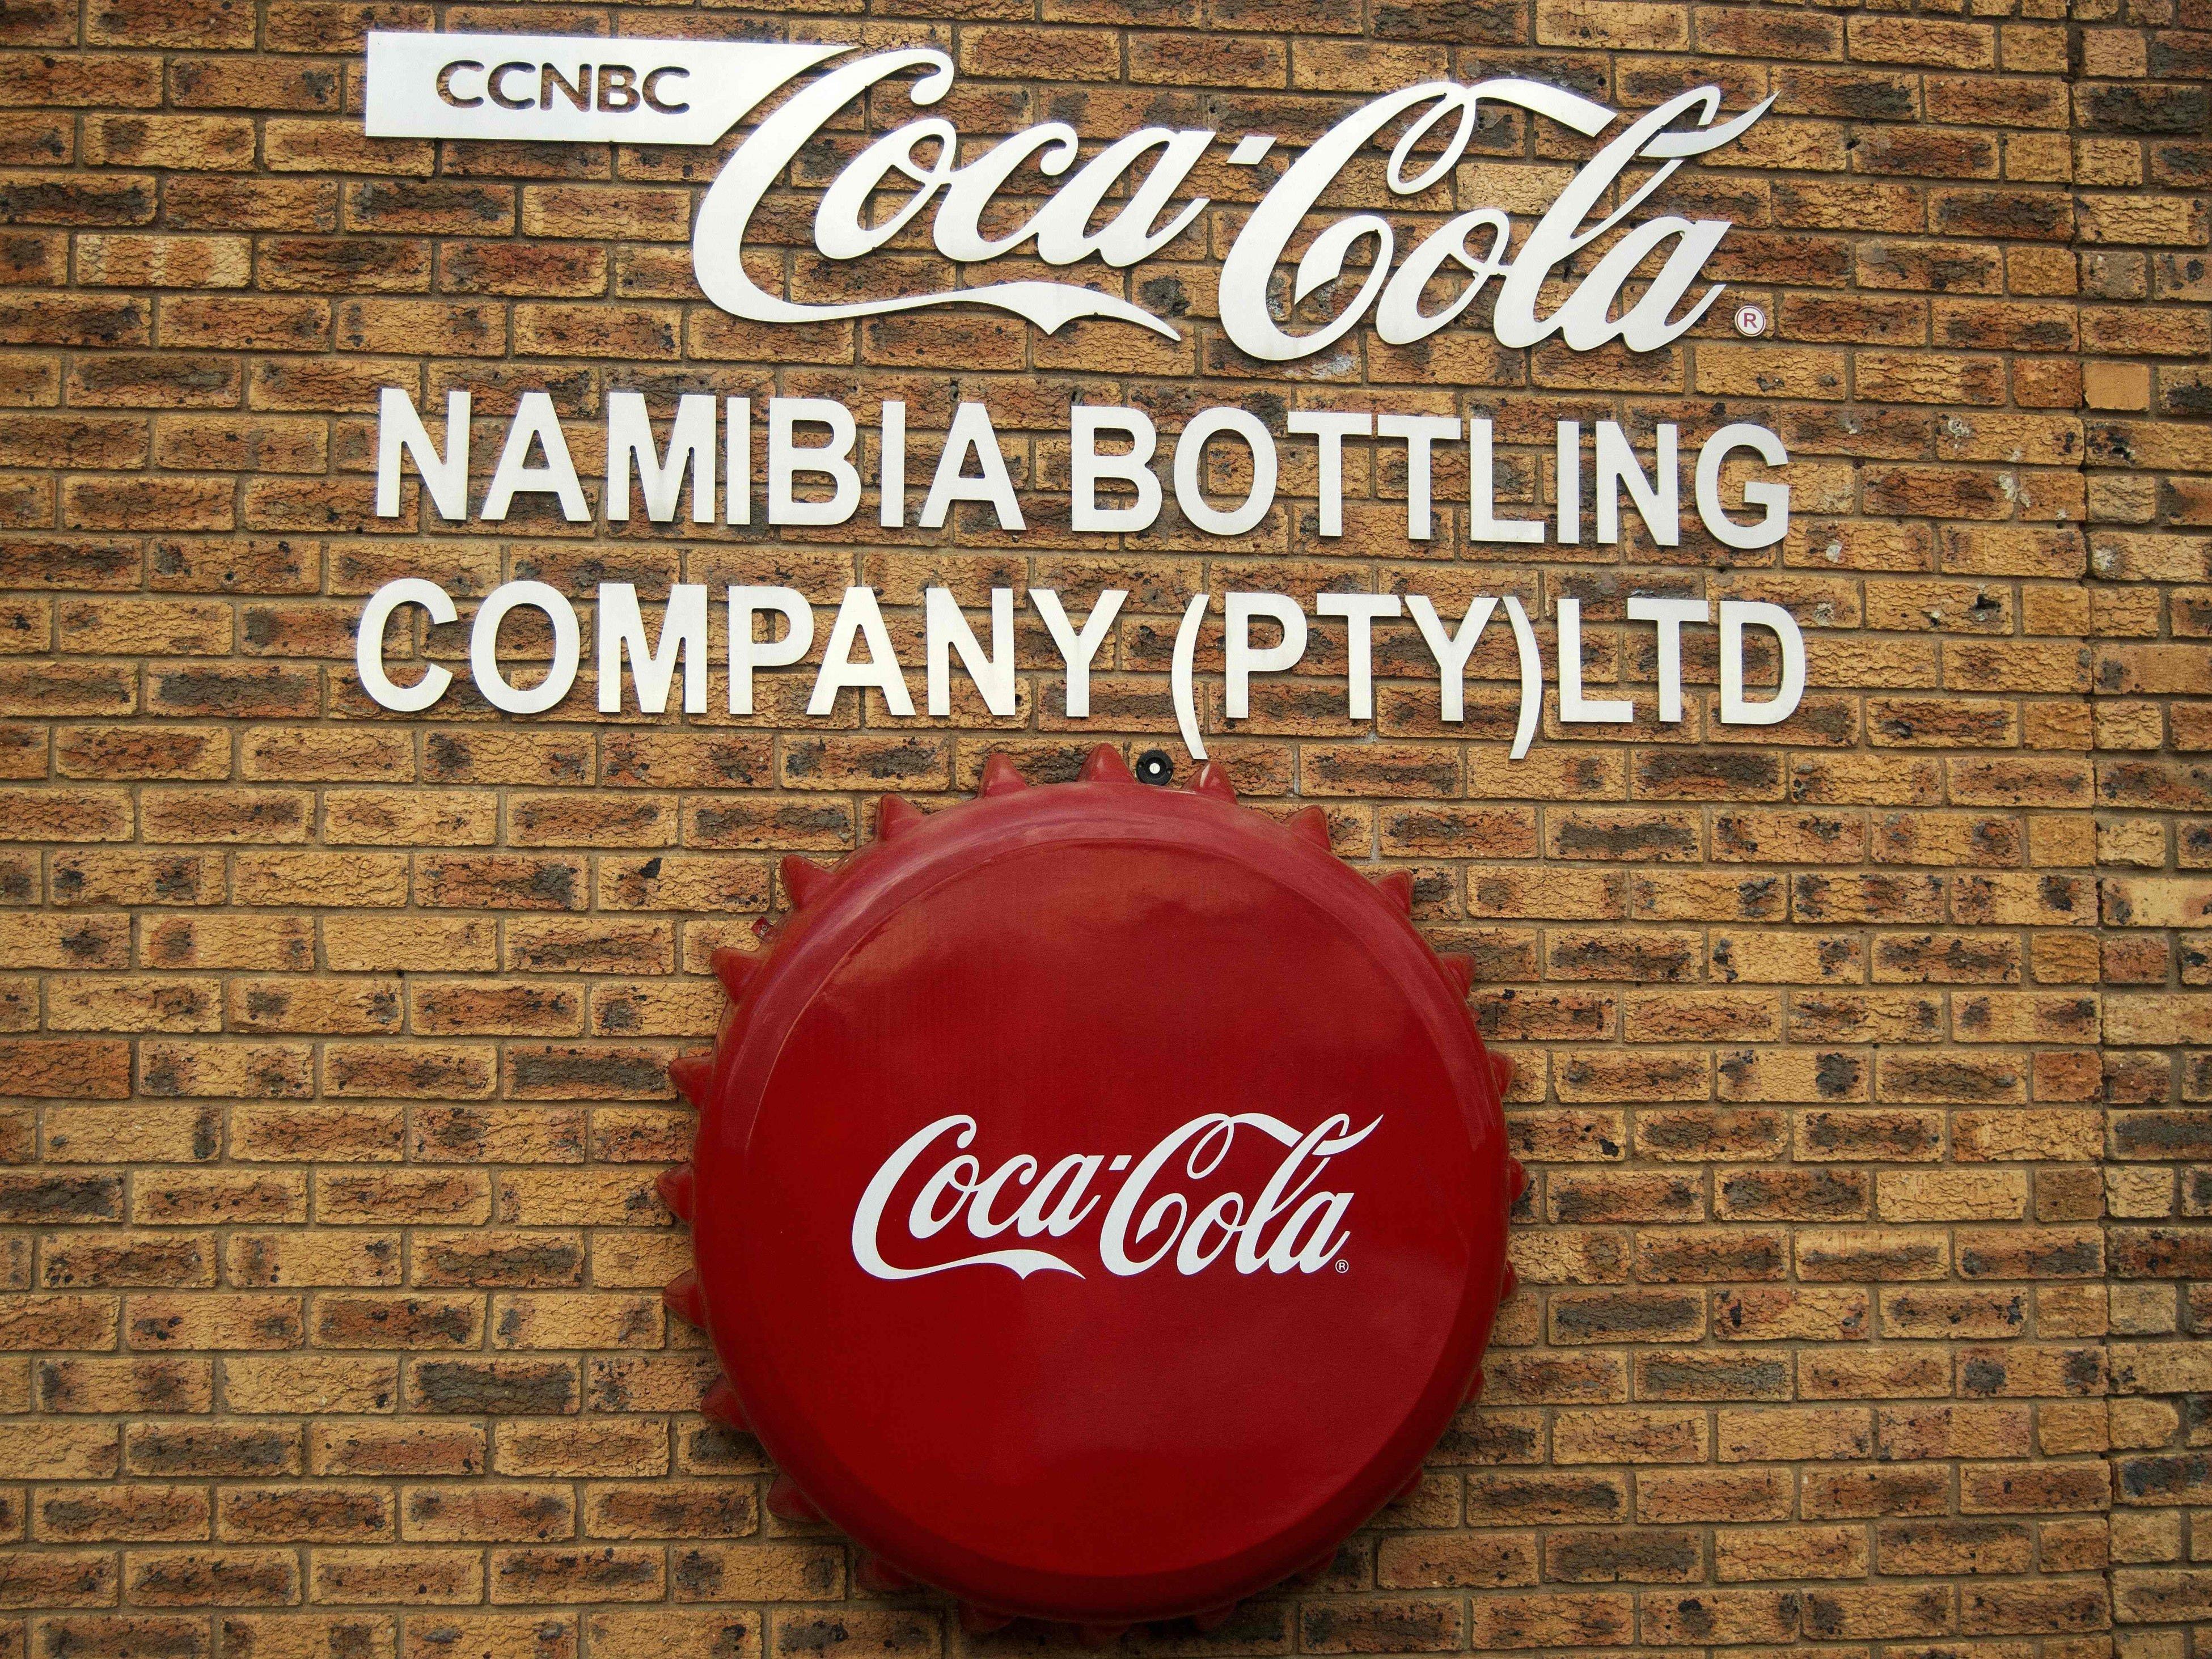 Die Coca-Cola-Produktion in Namibia wurde vorübergehend gestoppt.